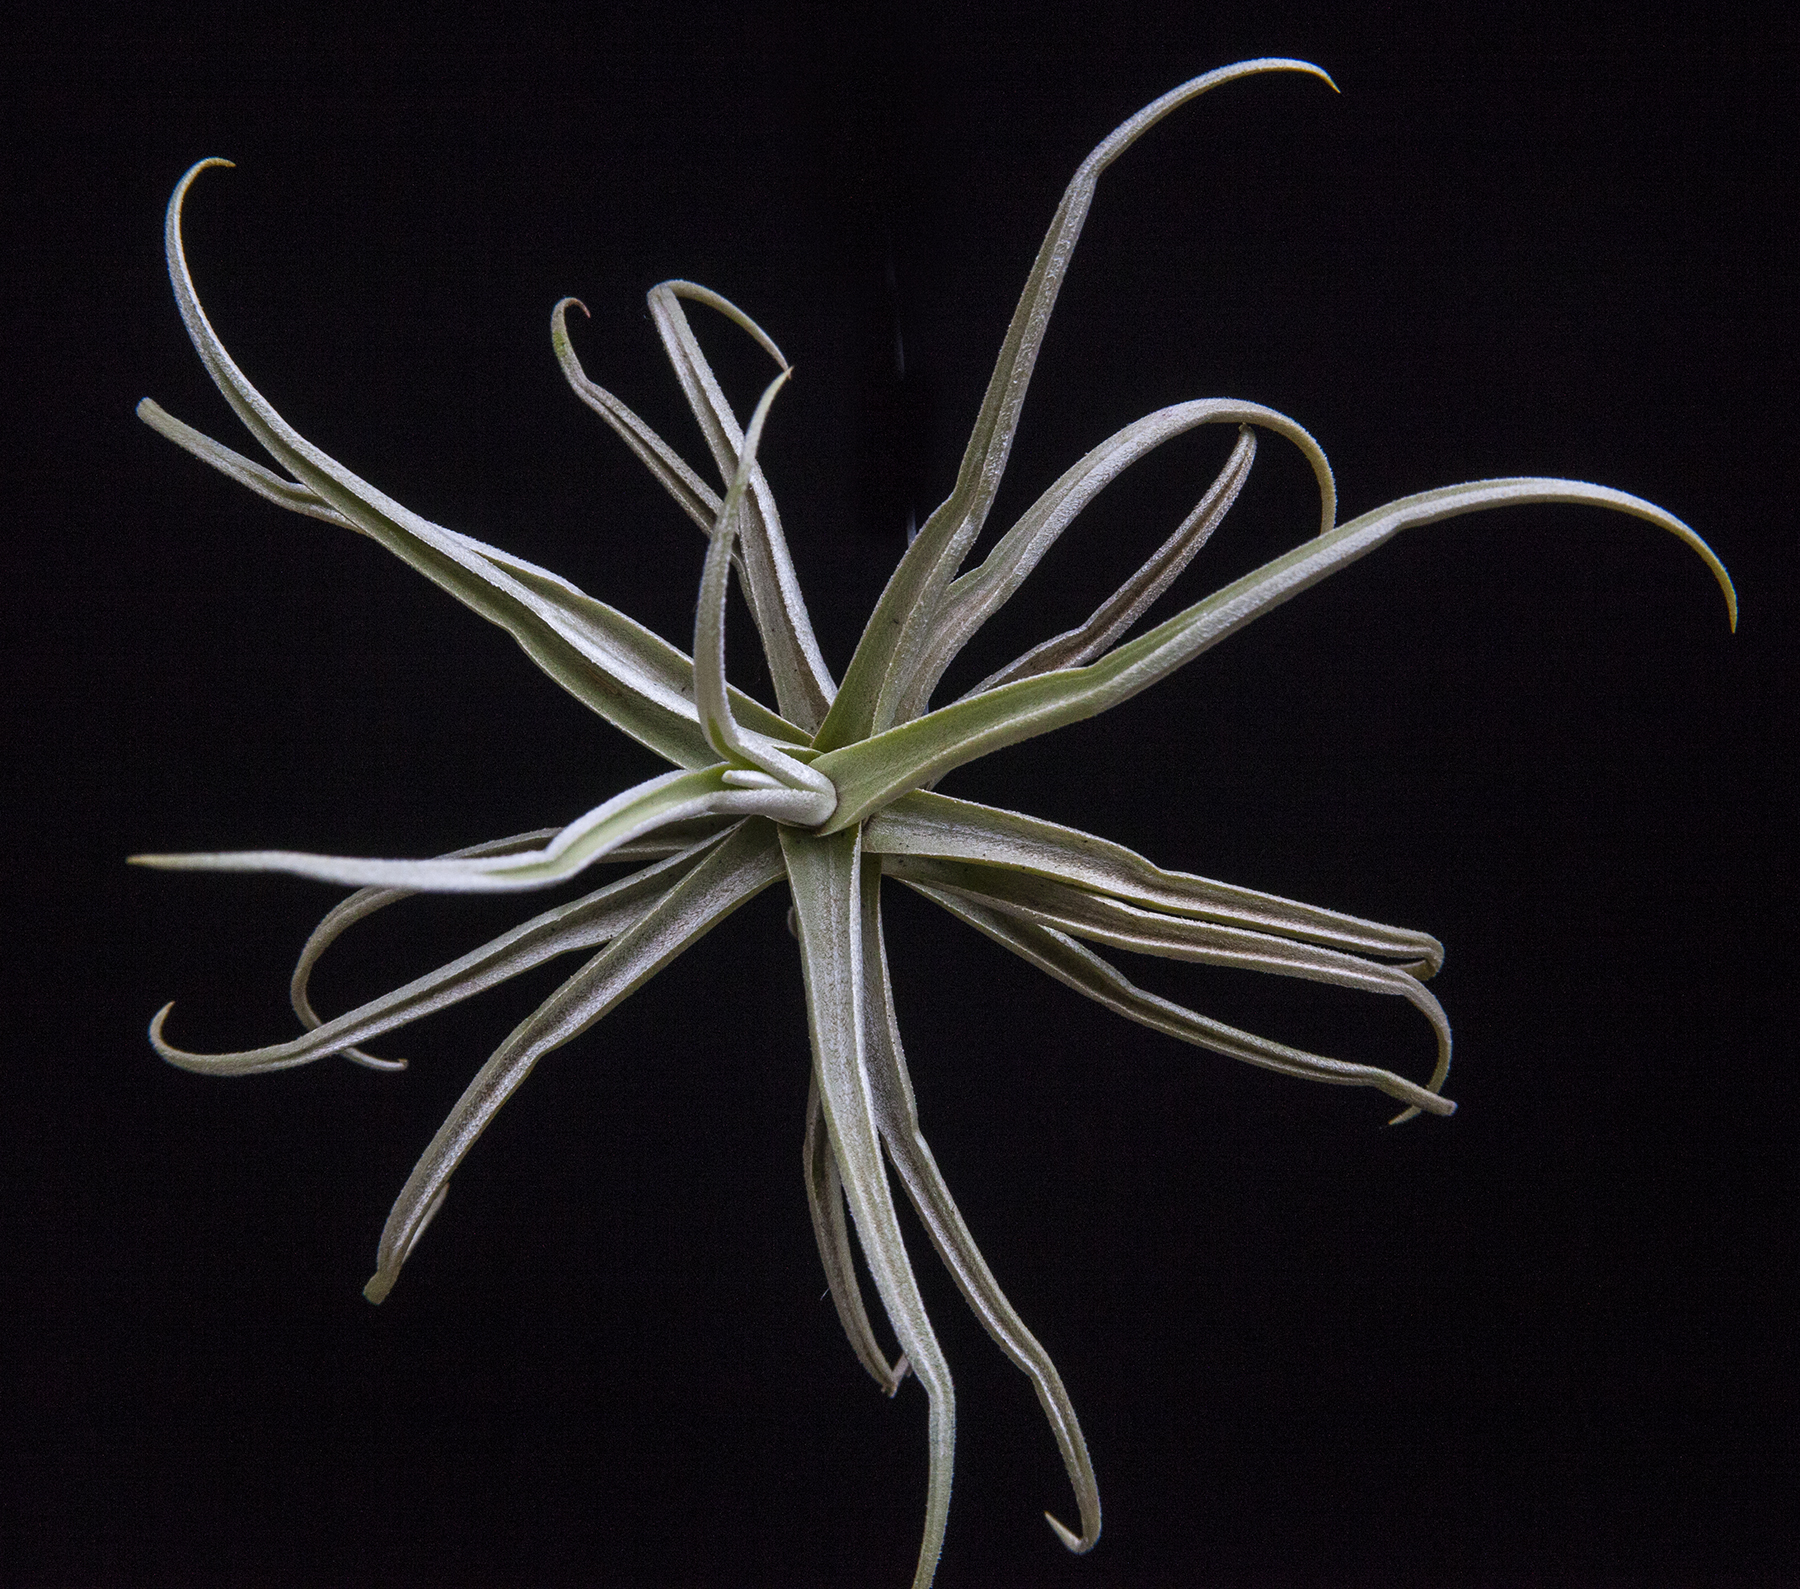 T. reichenbachii white flower form